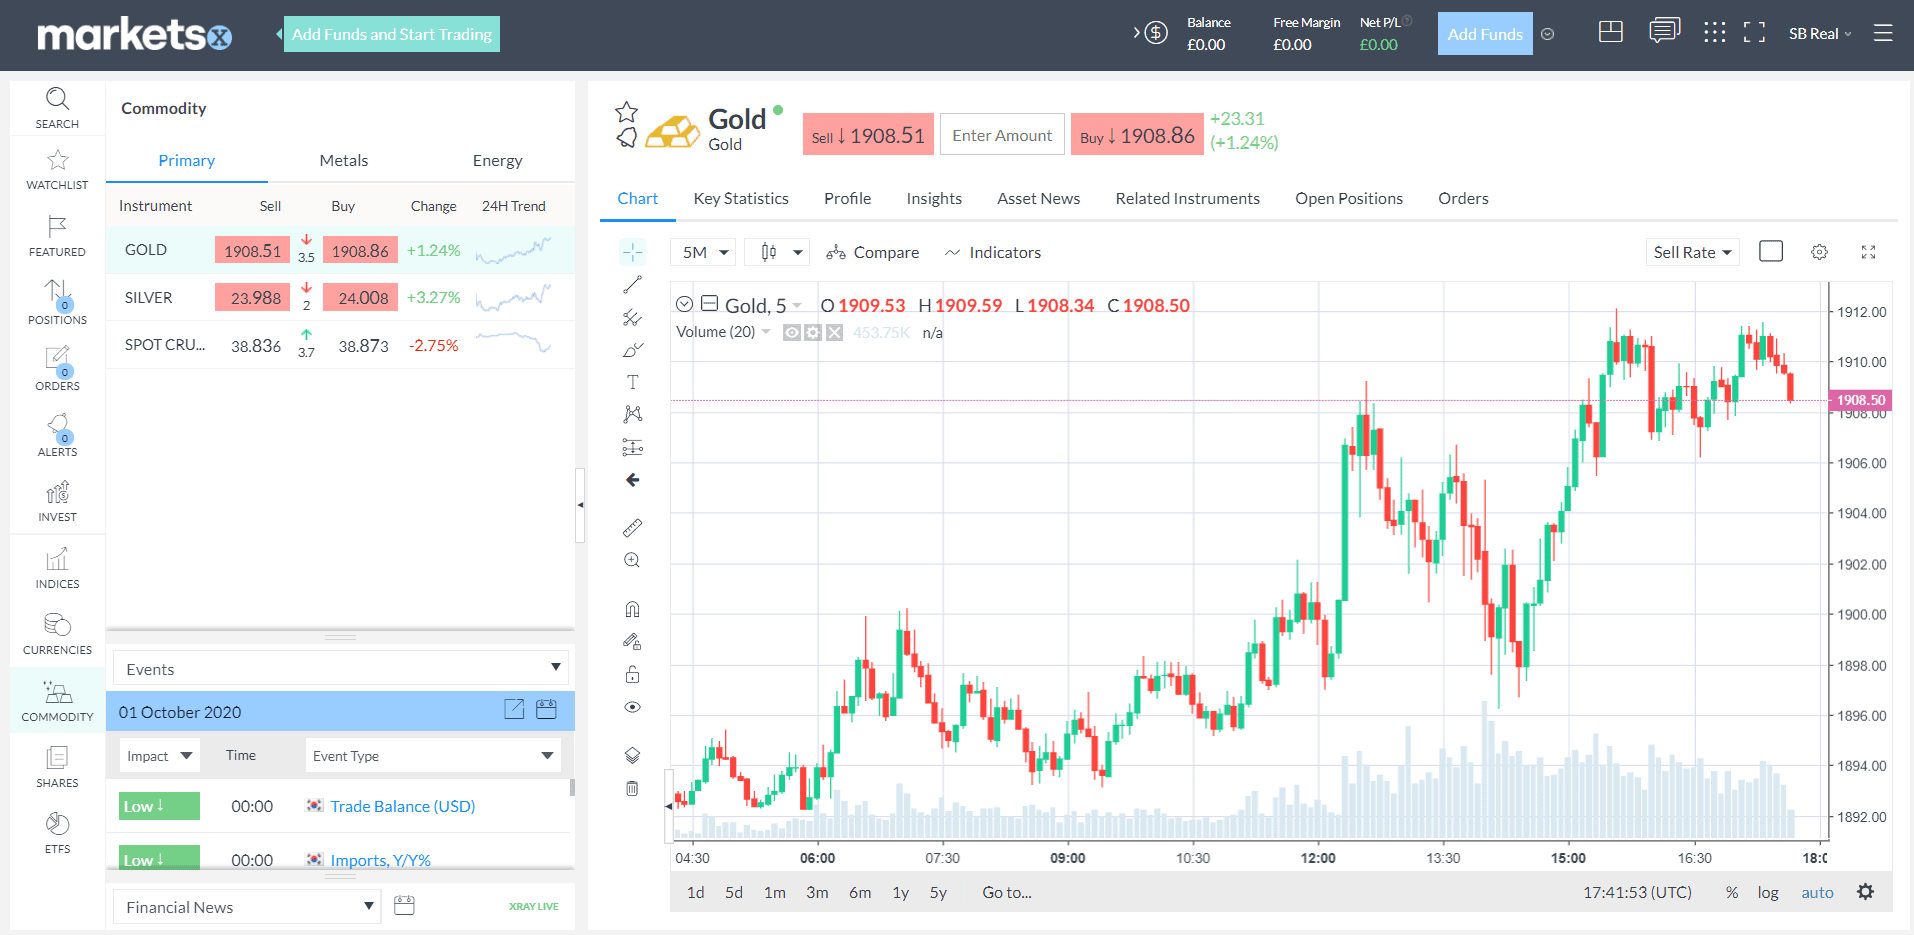 markets.com gold chart